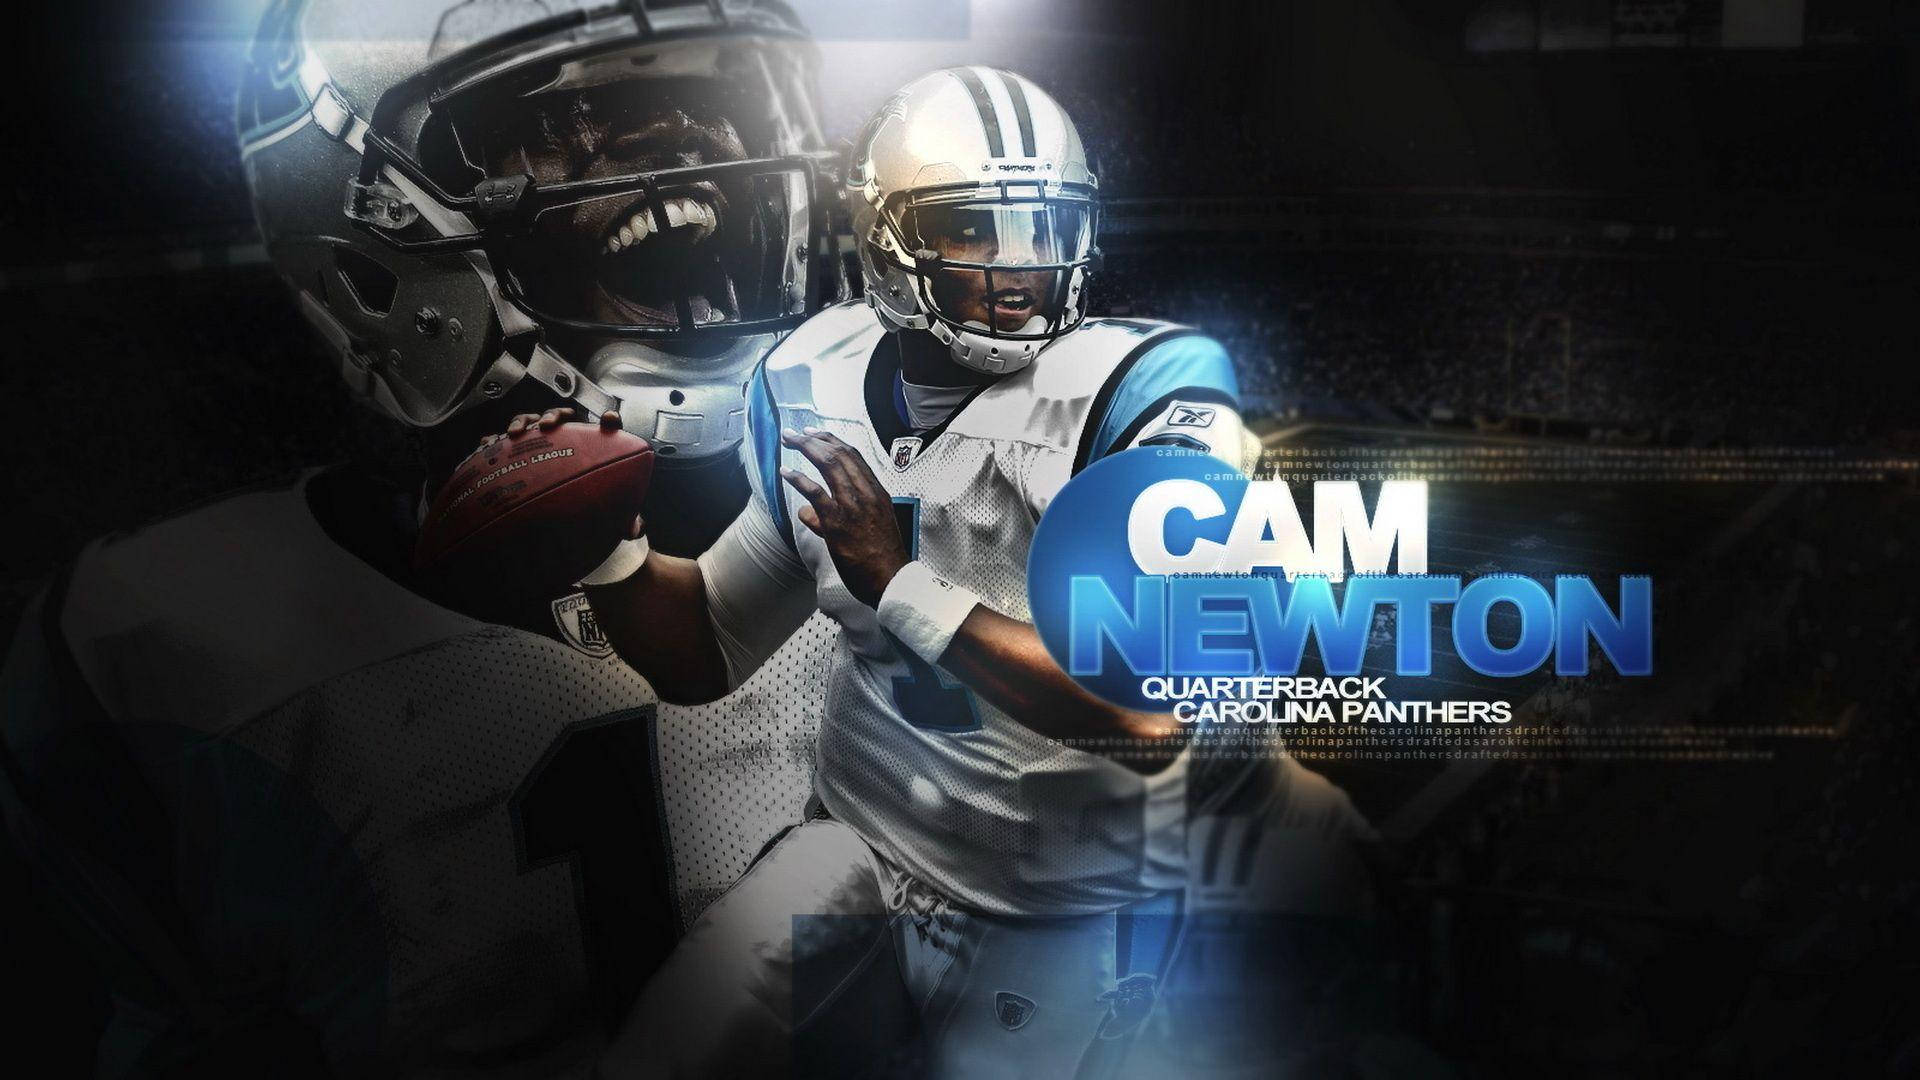 Carolina Panthers Cam Newton